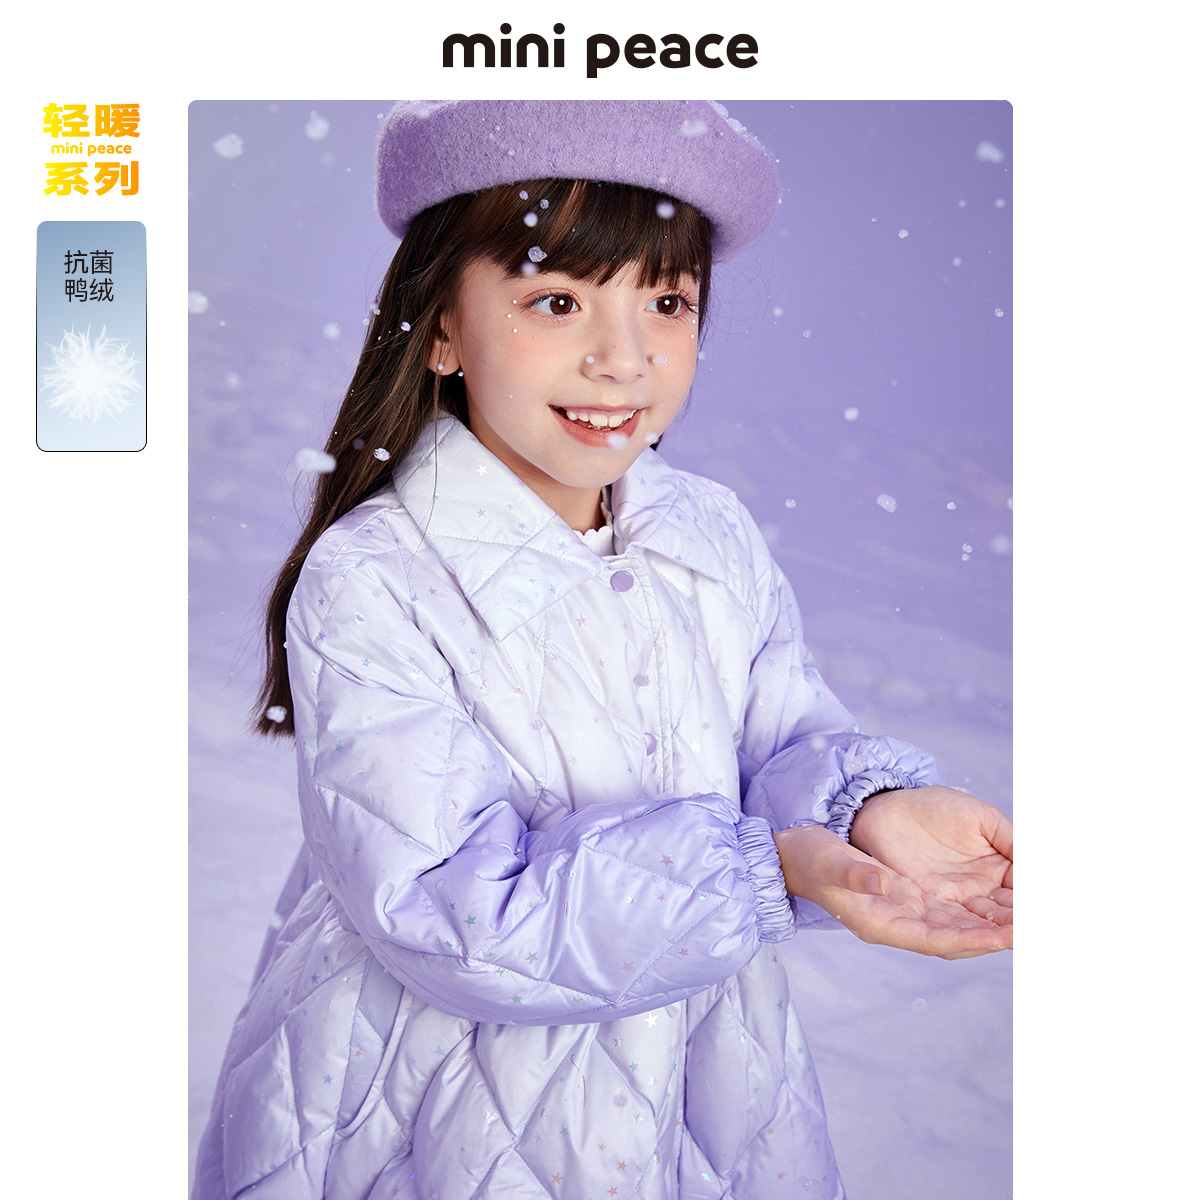  minipeace羽绒服